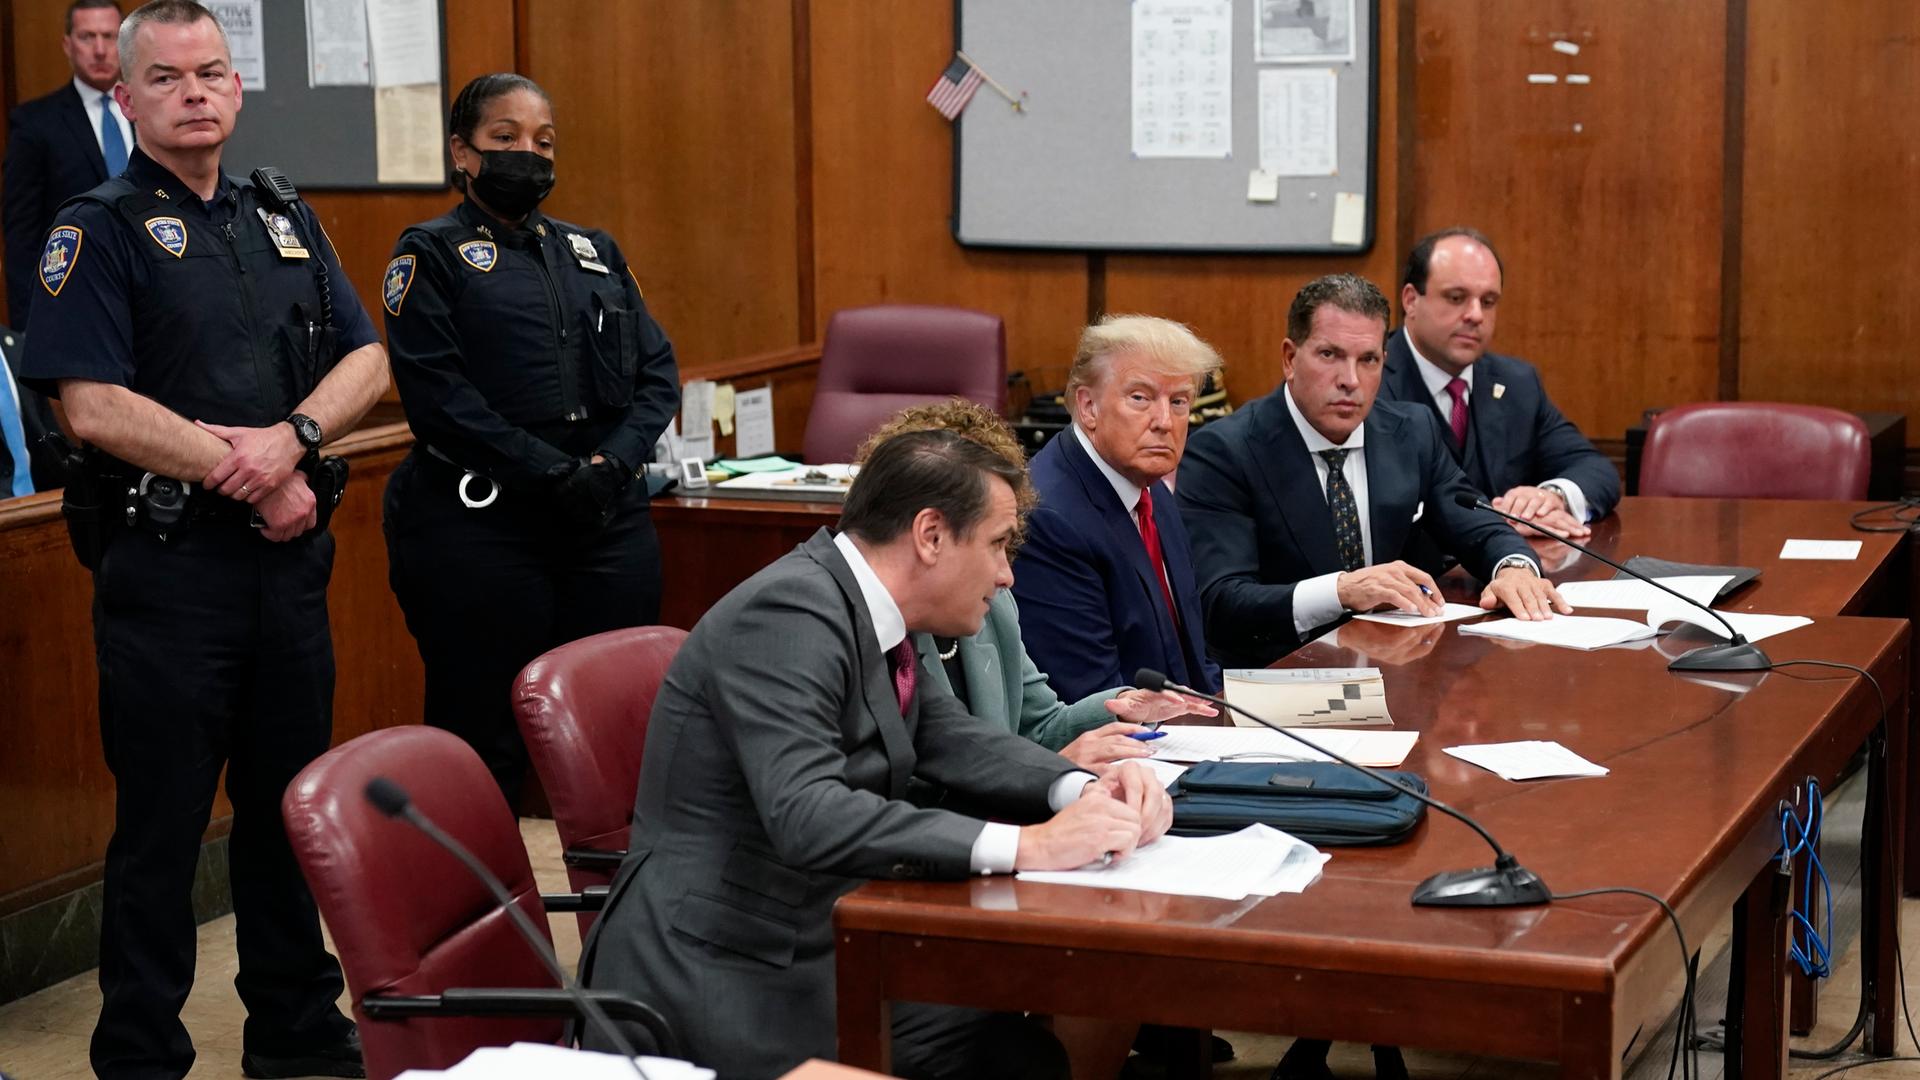 Donald Trump sitzt auf der Anklagebank eines Gerichts; links und rechts von ihm je zwei Anwälte. Im Hintergrund stehen uniformierte Beamte.